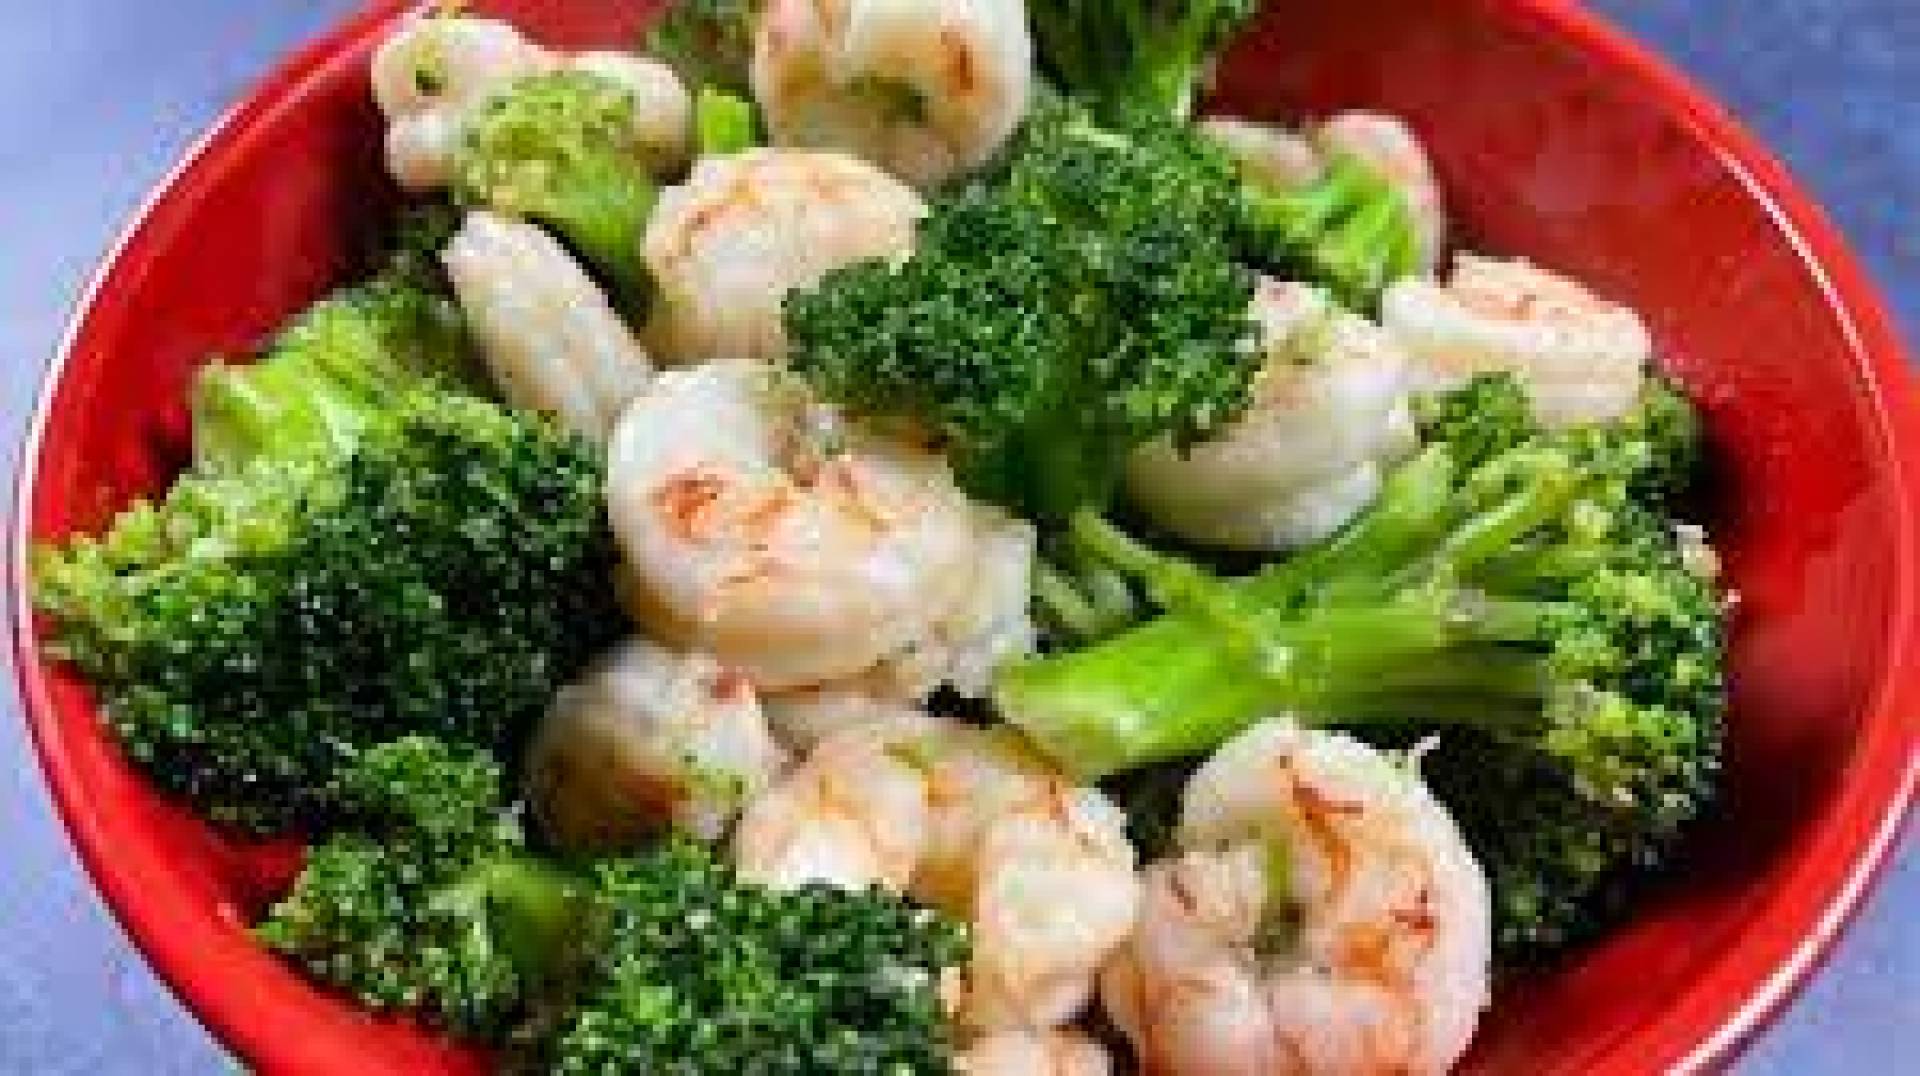 Low Carb DF) Korean Shrimp & Broccoli